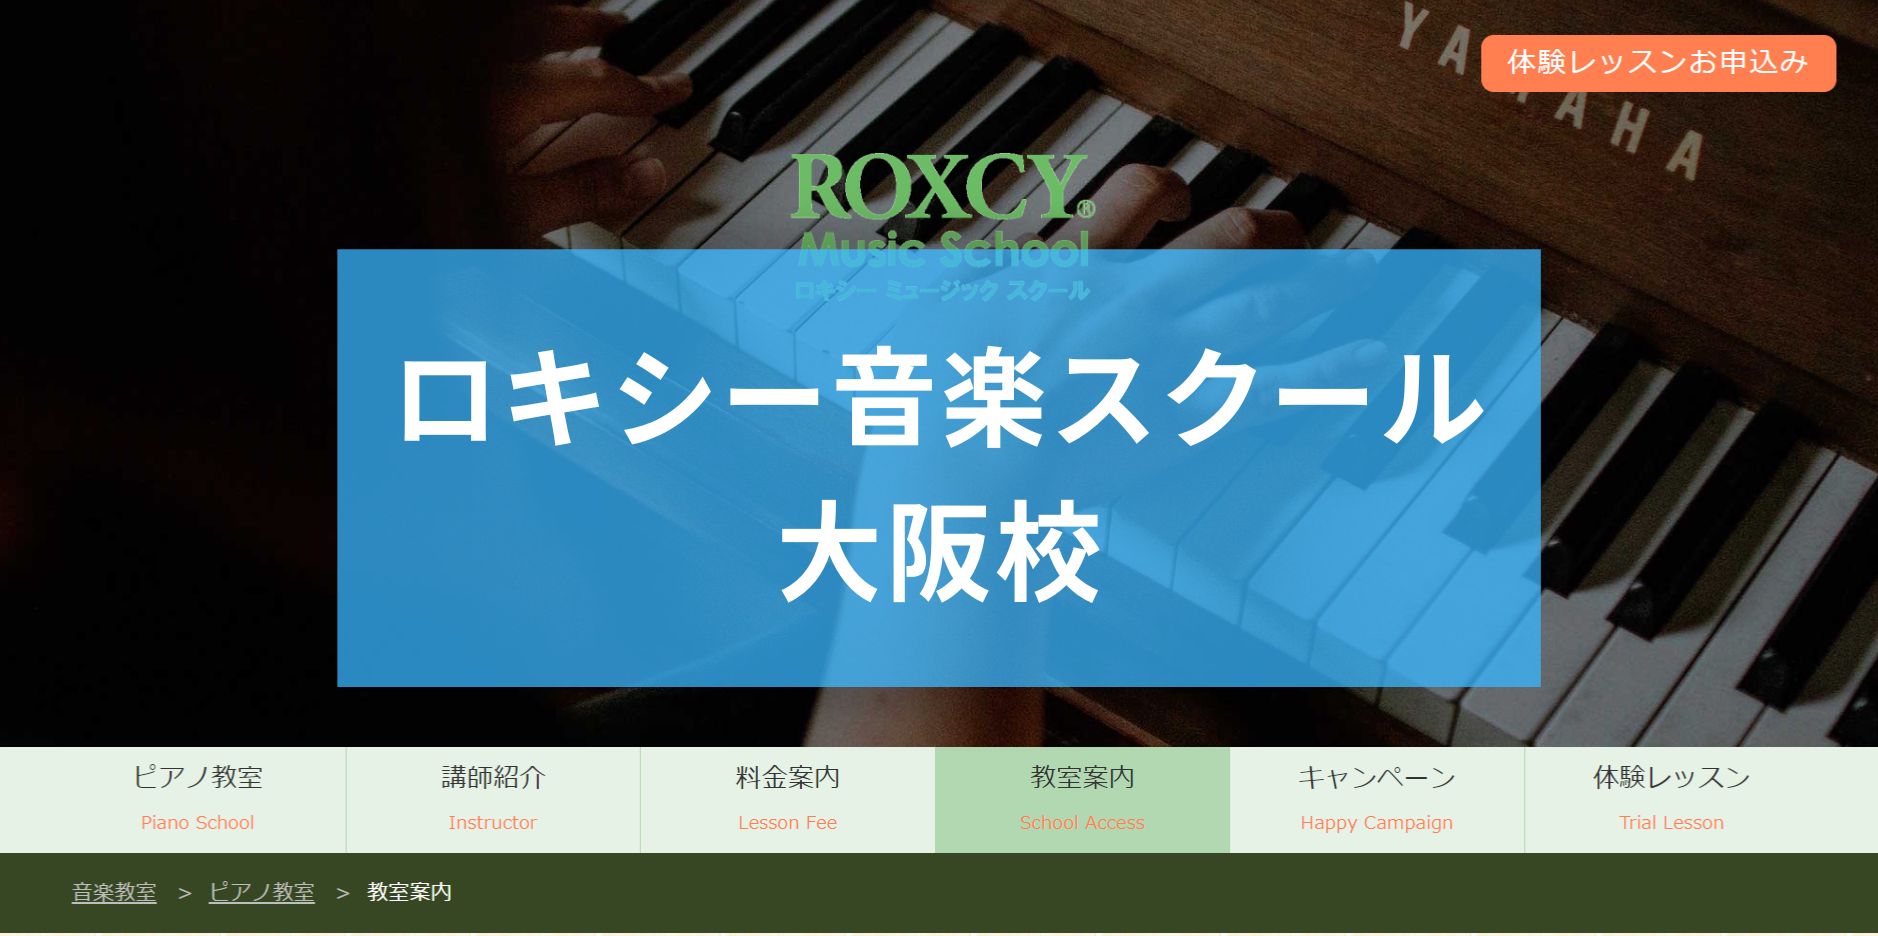 〈第5位〉自由予約制で忙しい人でも通いやすい！大阪の【ロキシー音楽スクール 大阪校】はプロの講師とピアノのレッスンできる